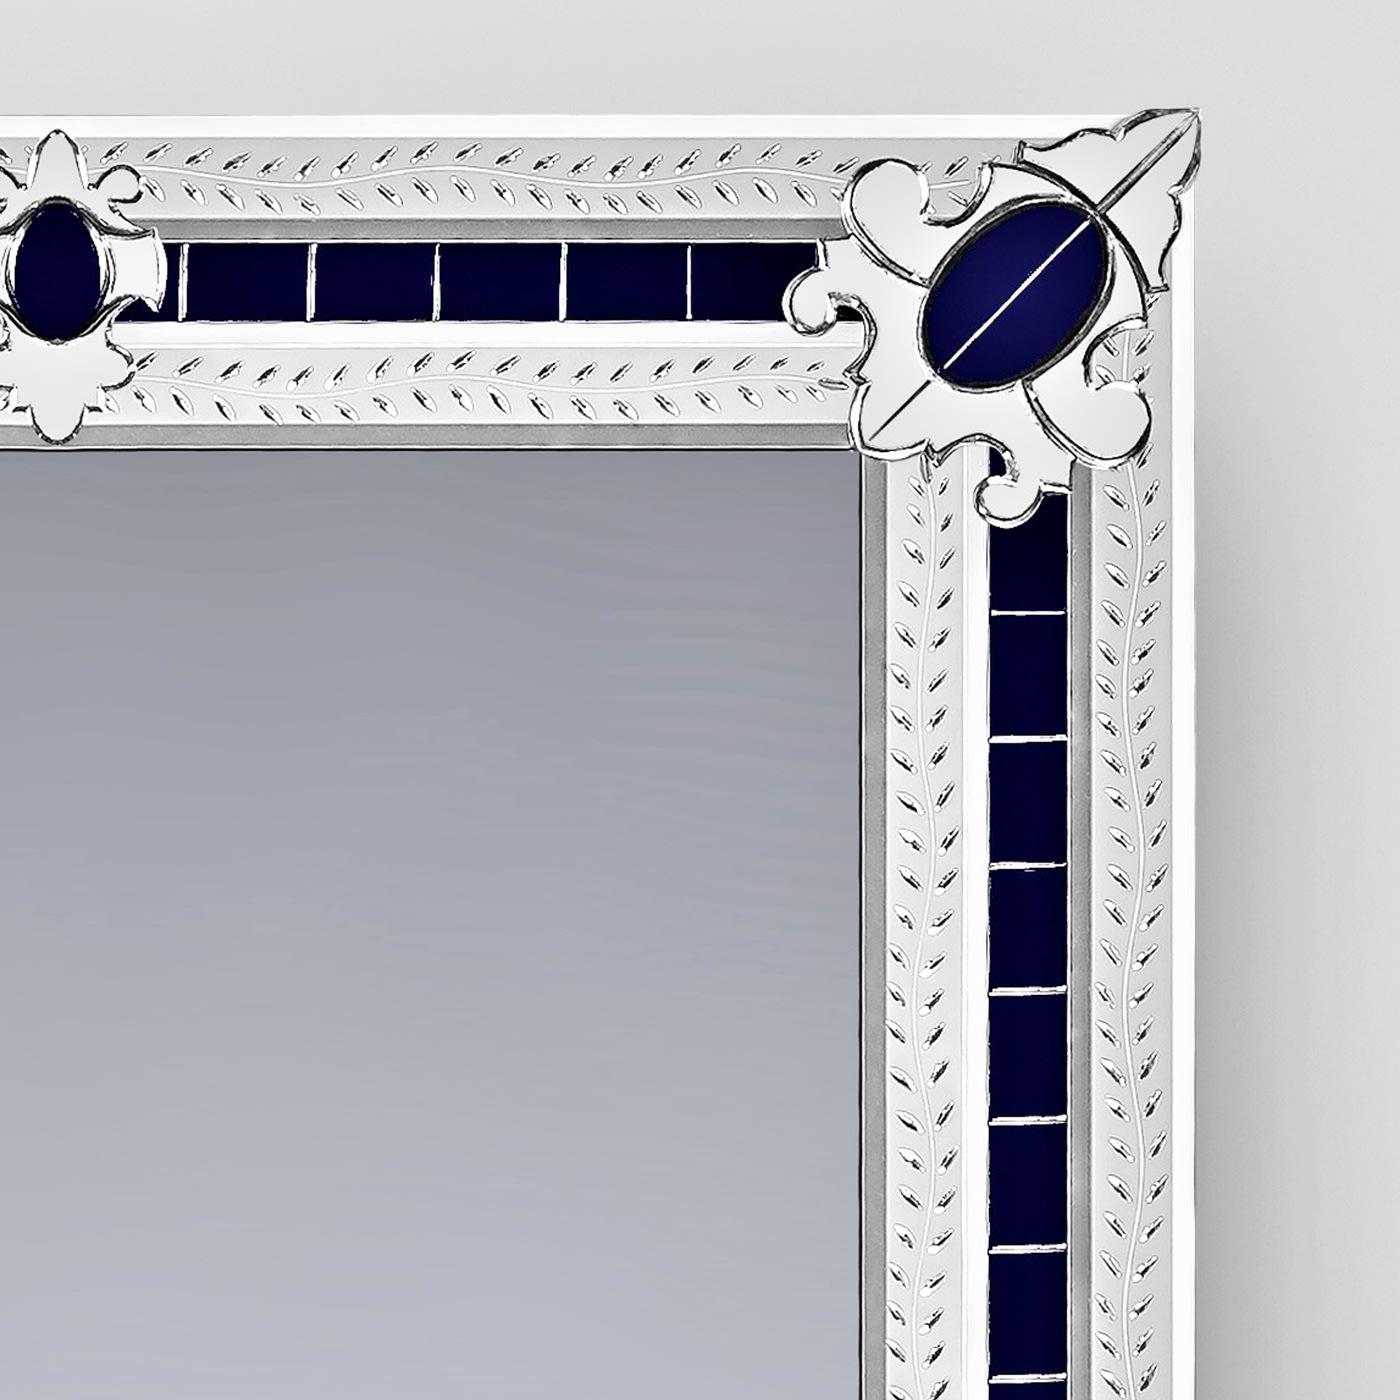 Magnifique miroir rectangulaire composé de broderies en miroir biseauté et argenté dans les angles, toutes réalisées à la main avec des bandes gravées d'un sujet floral, sur un fond de miroir en verre de Murano bleu. Cette reproduction miniature